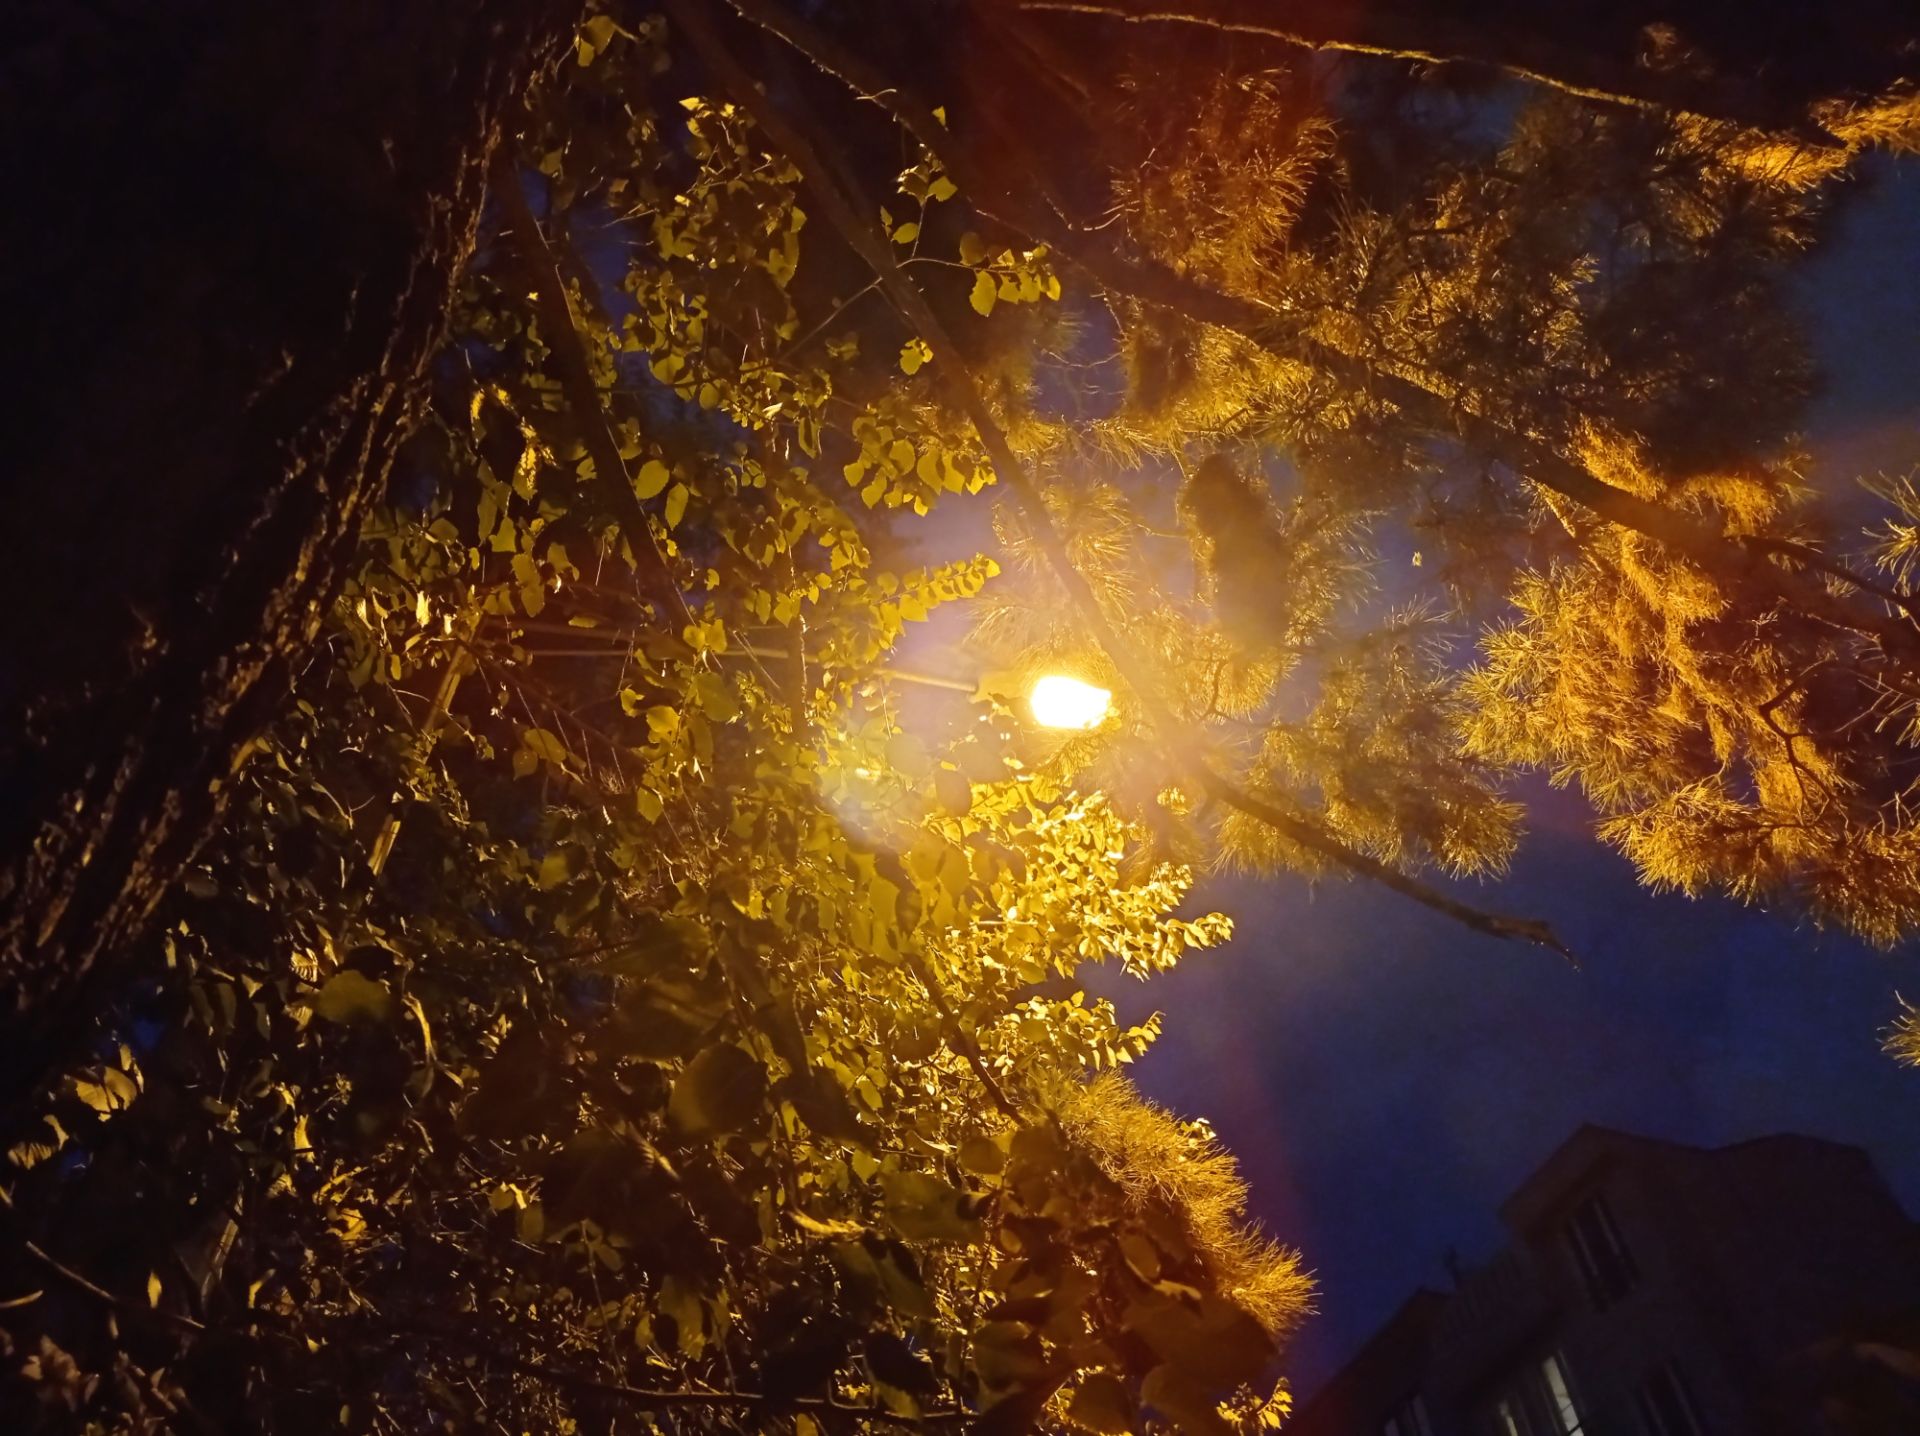 نمونه عکس 1x دوربین اصلی ردمی نوت ۹ در تاریکی - شاخه درخت زیر نور چراغ برق